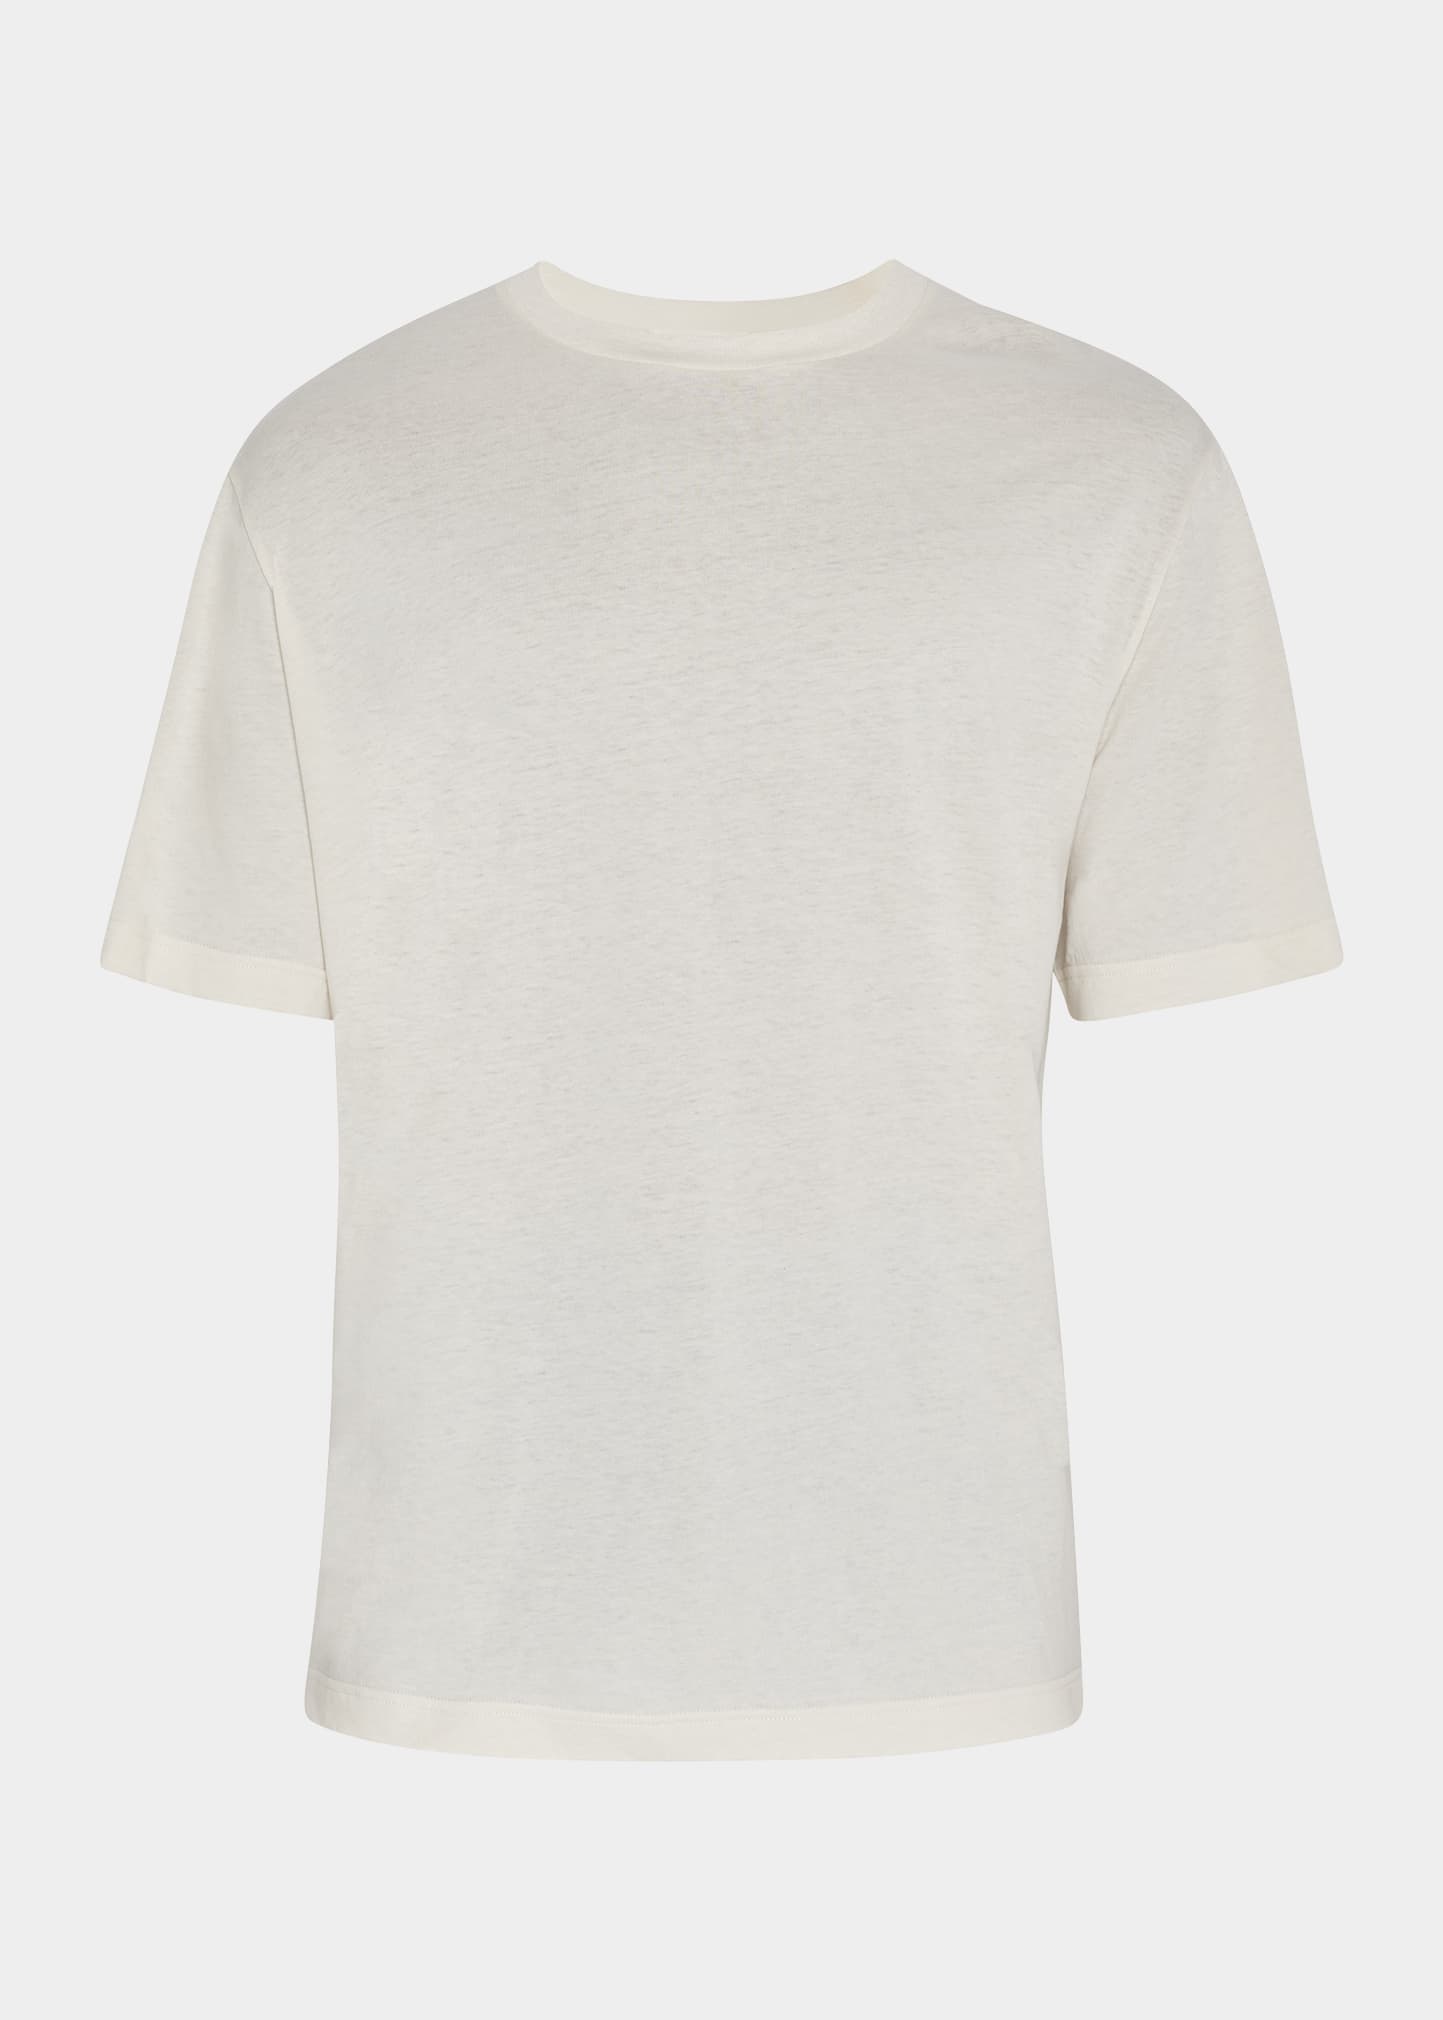 Men's Errigal Organic Cotton T-Shirt